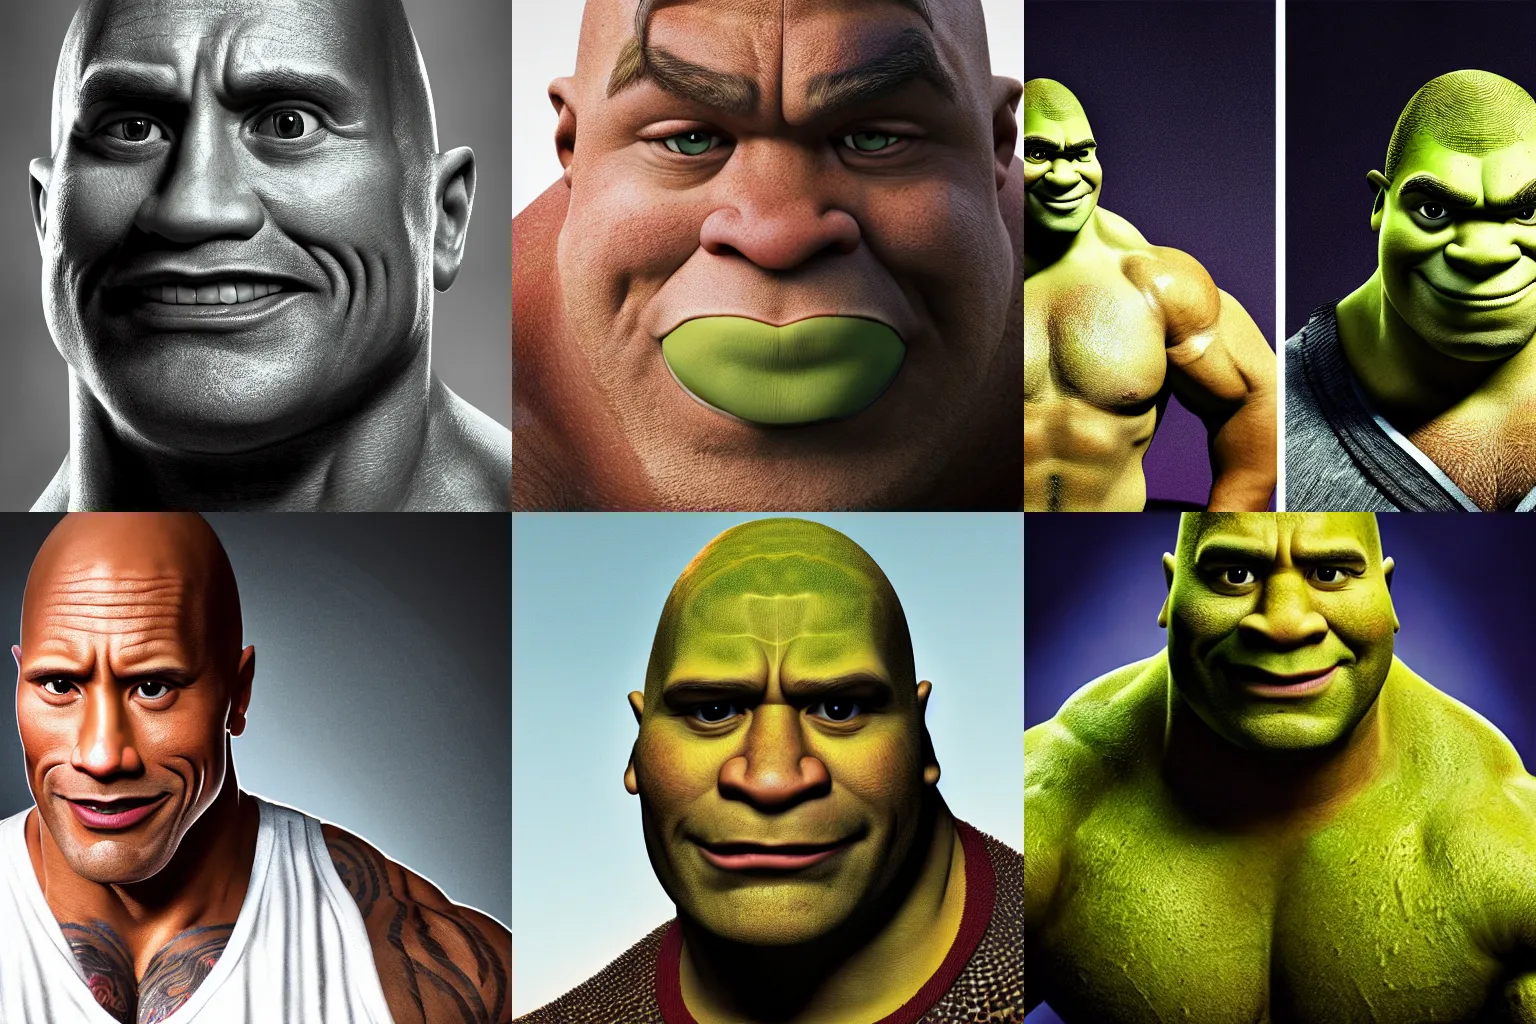 Prompt: detailed portrait of Dwayne Johnson as Shrek, studio lighting